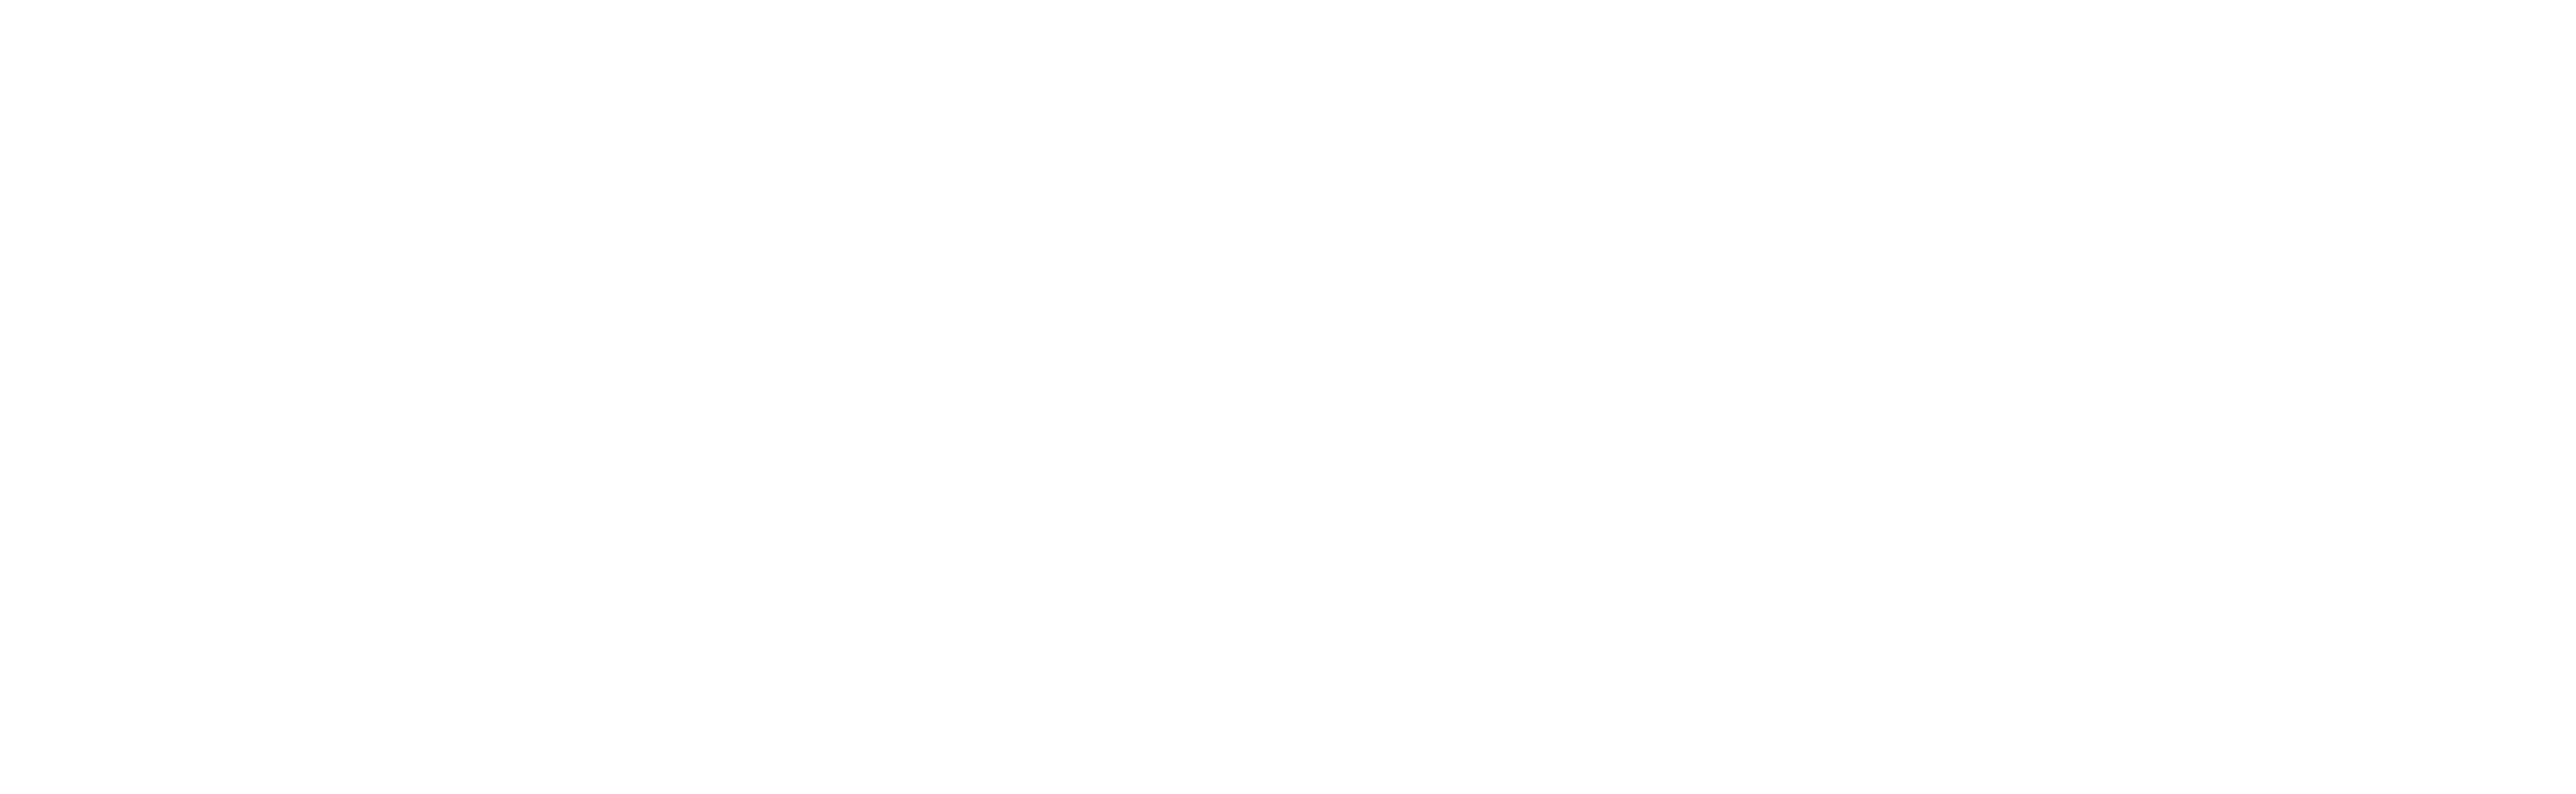 Brighton Beach Memoirs logo